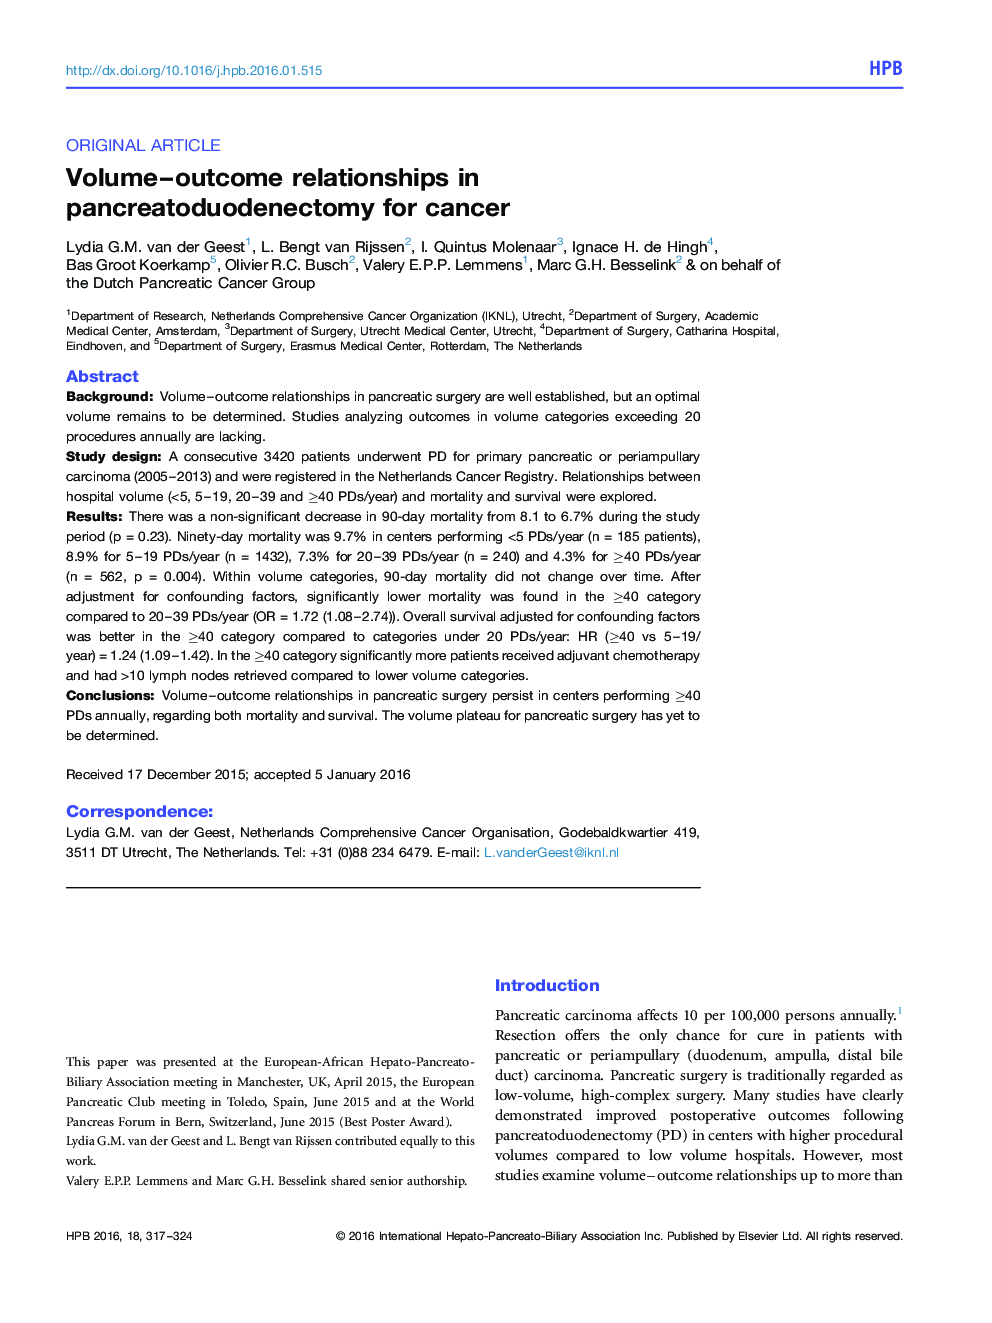 روابط دوره ـ نتیجه در پانکراتوودوژنکتومی برای سرطان